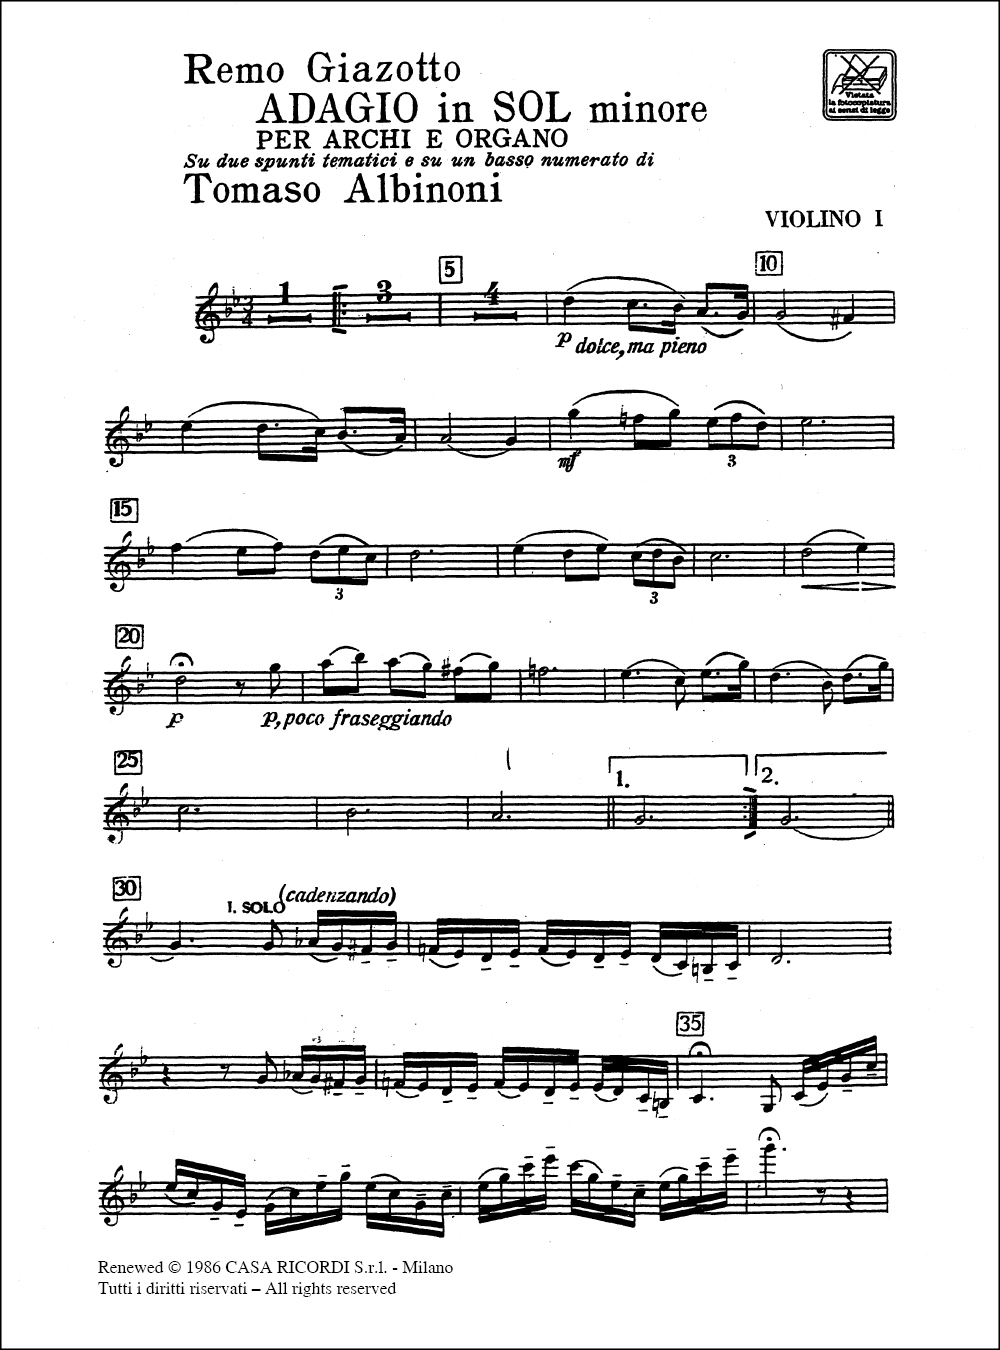 Tomaso Albinoni: Adagio in sol minore (g minor): Chamber Ensemble